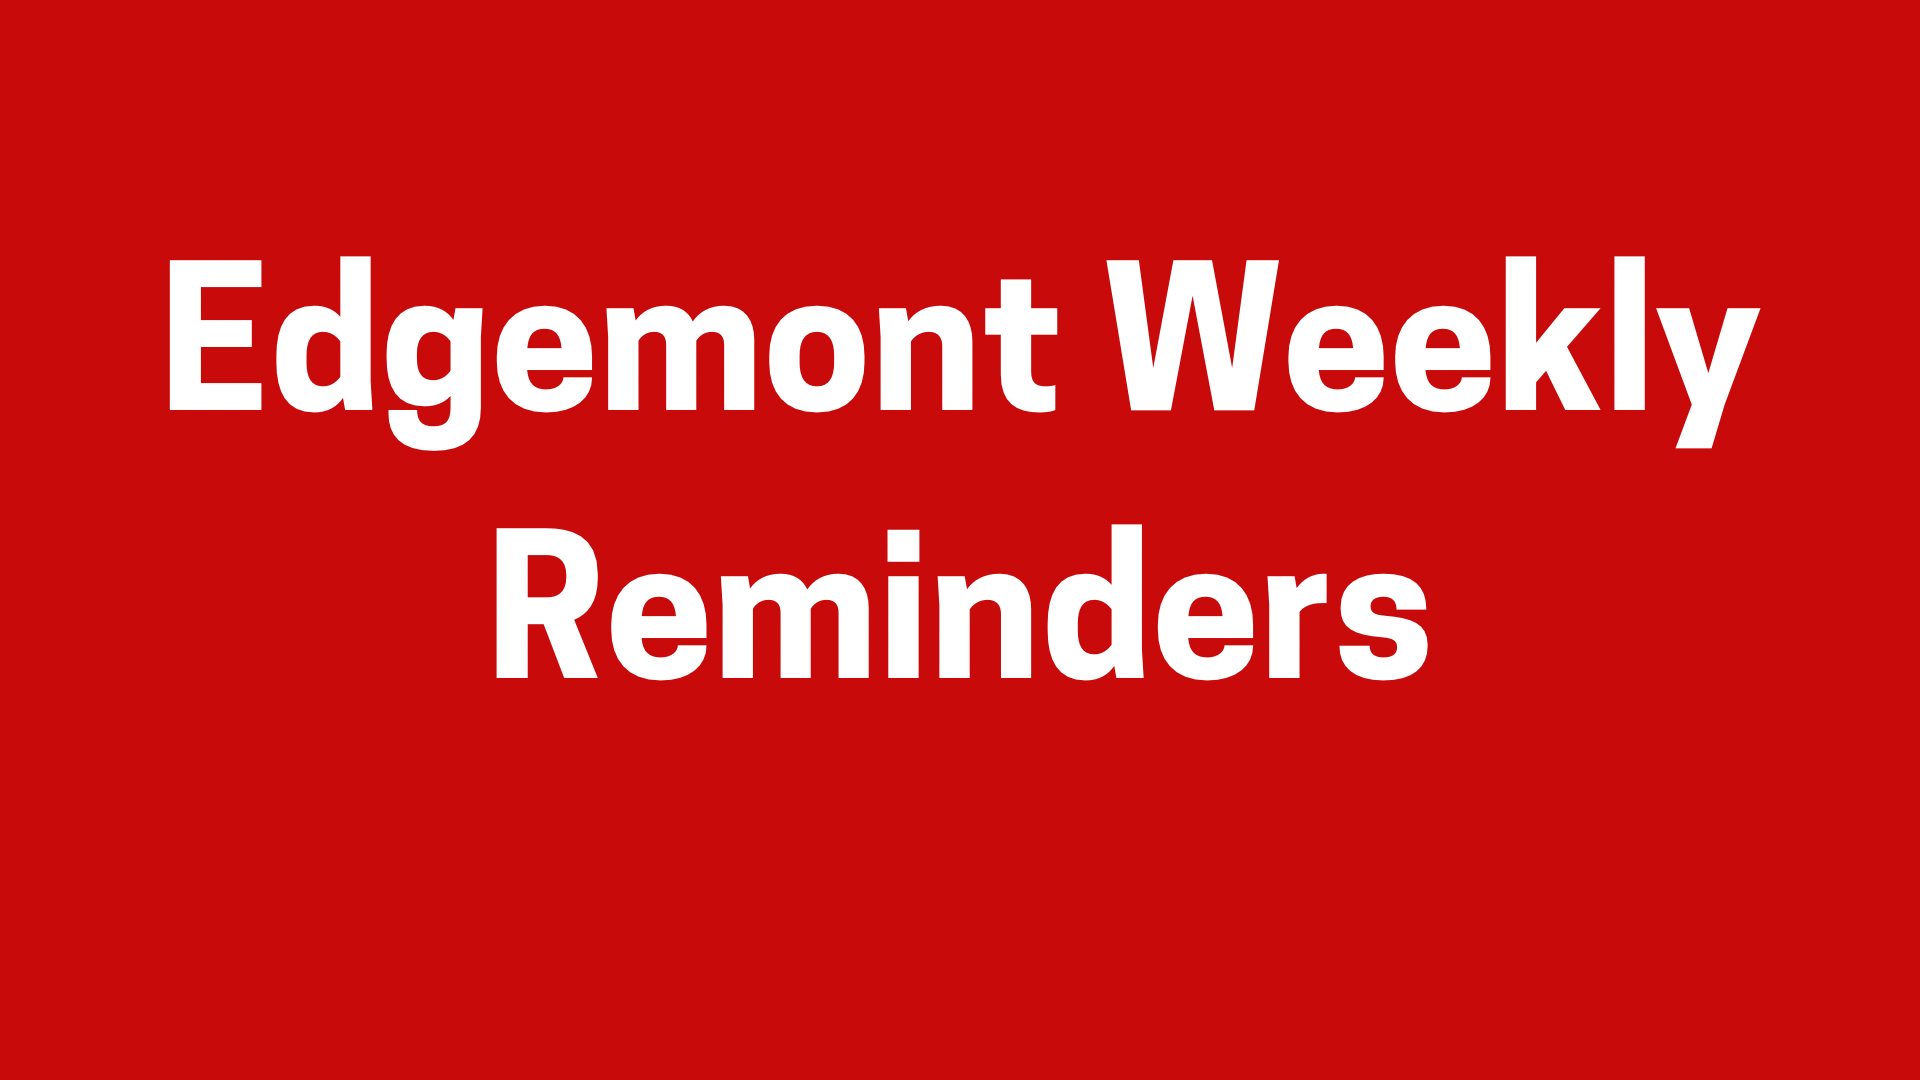 Edgemont weekly reminders